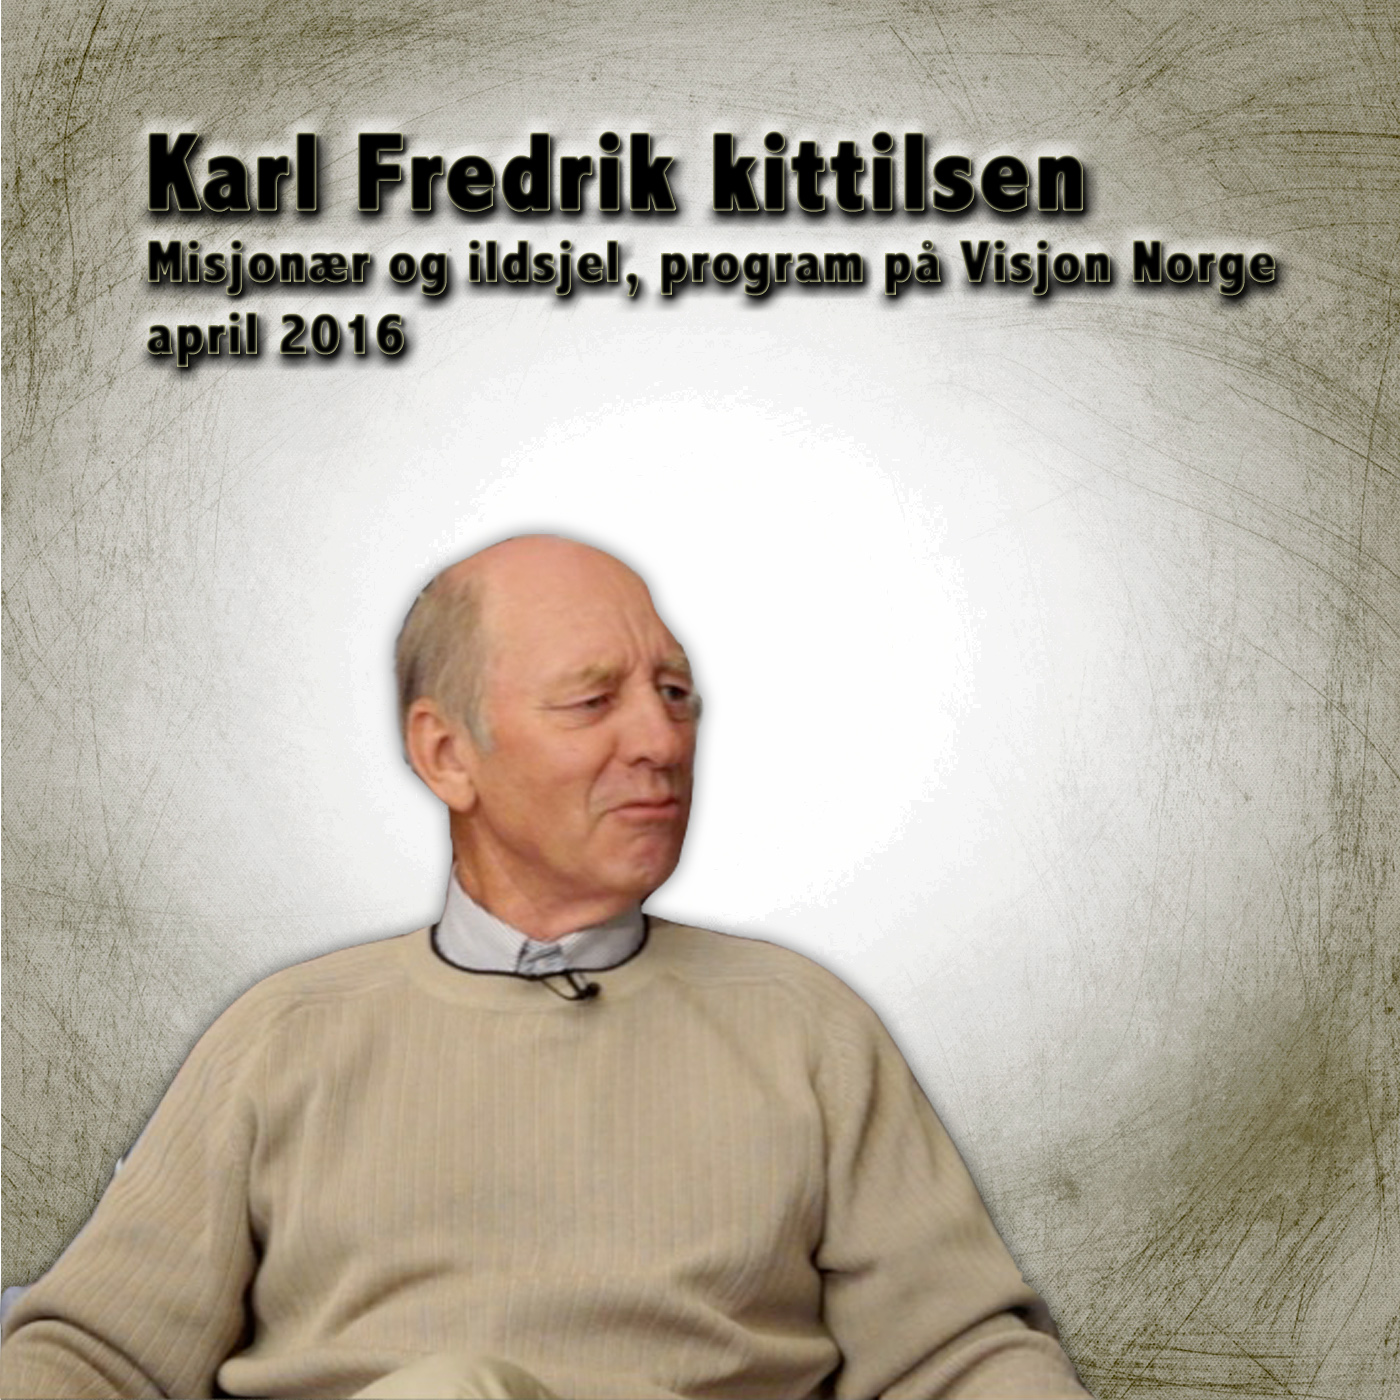 Karl Fredrik Kittlesen del 1